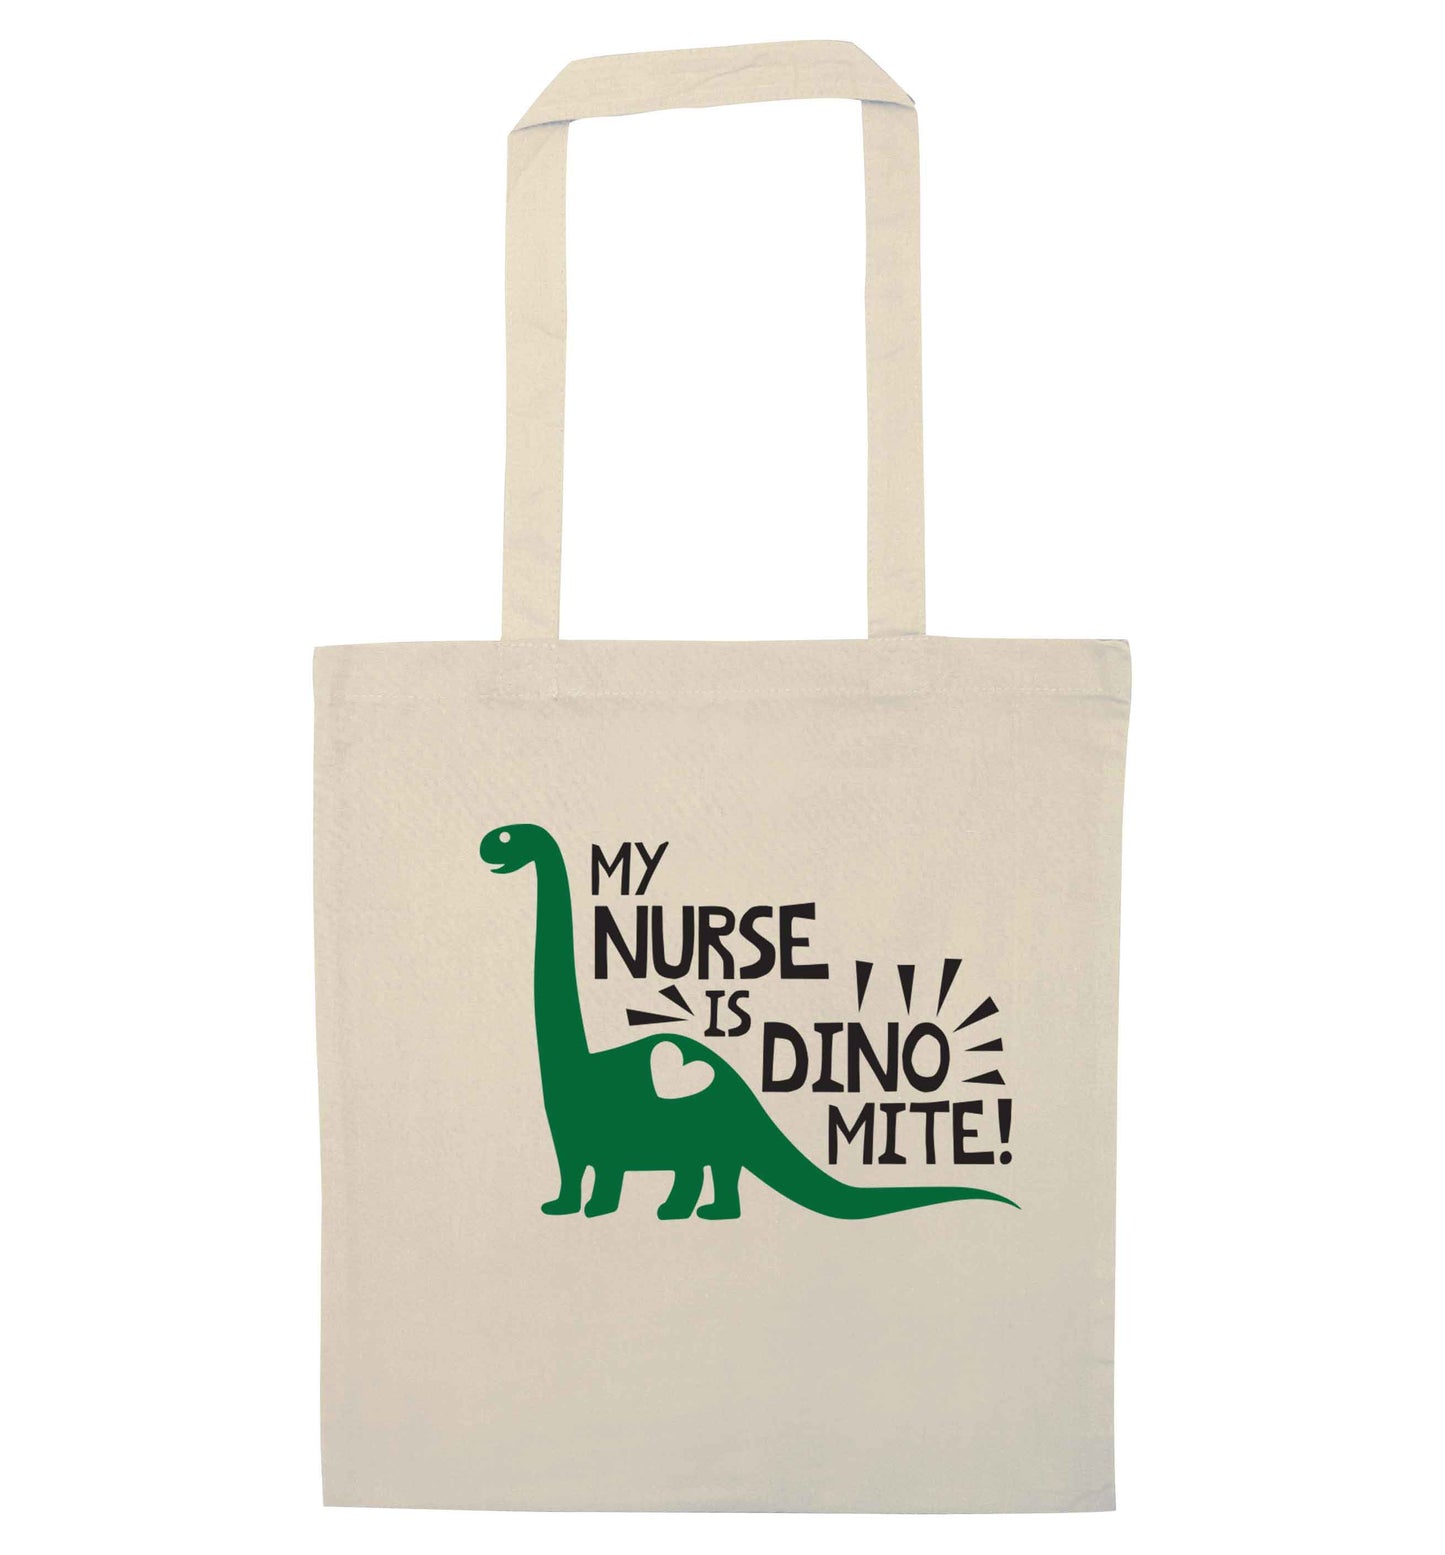 My nurse is dinomite! natural tote bag